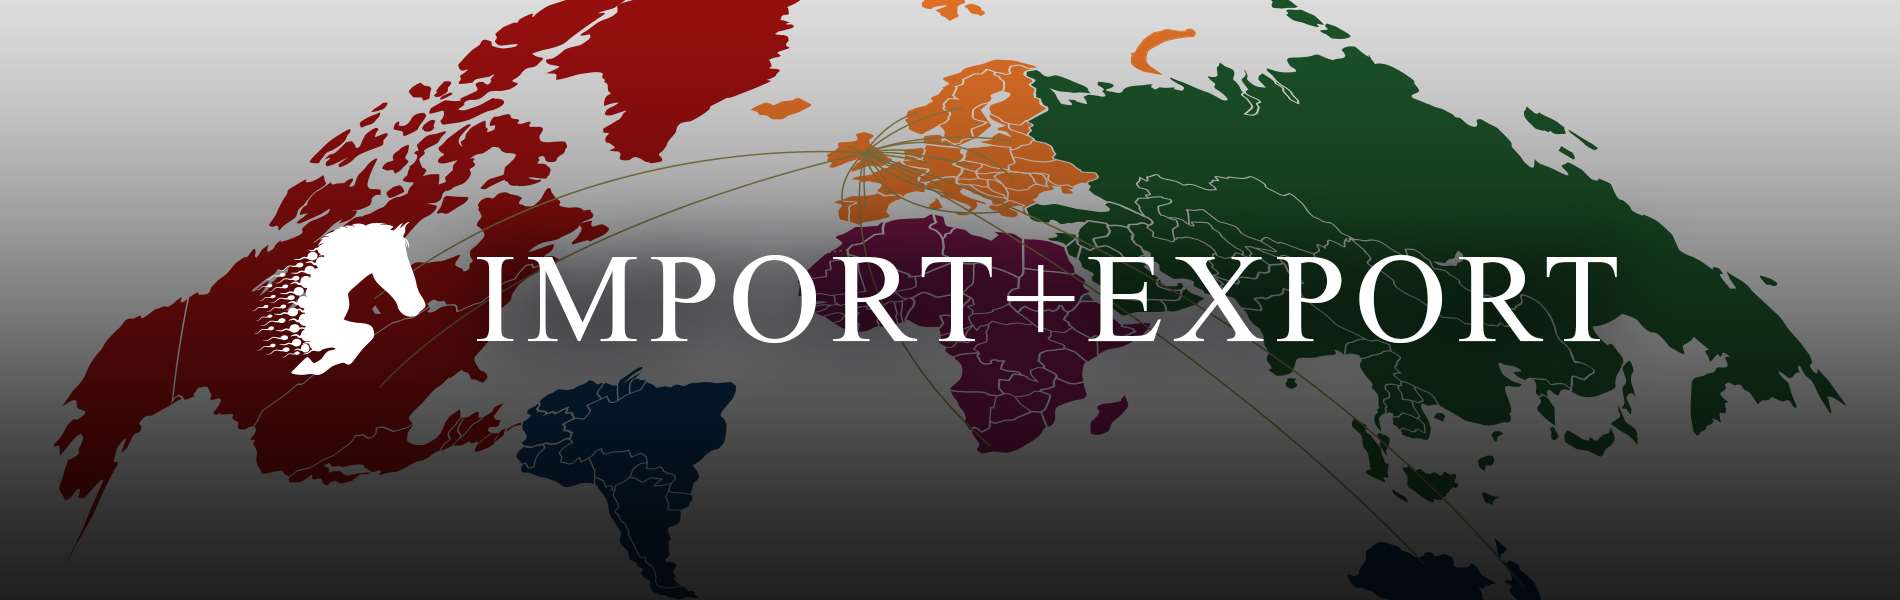 Importing & Exporting Semen